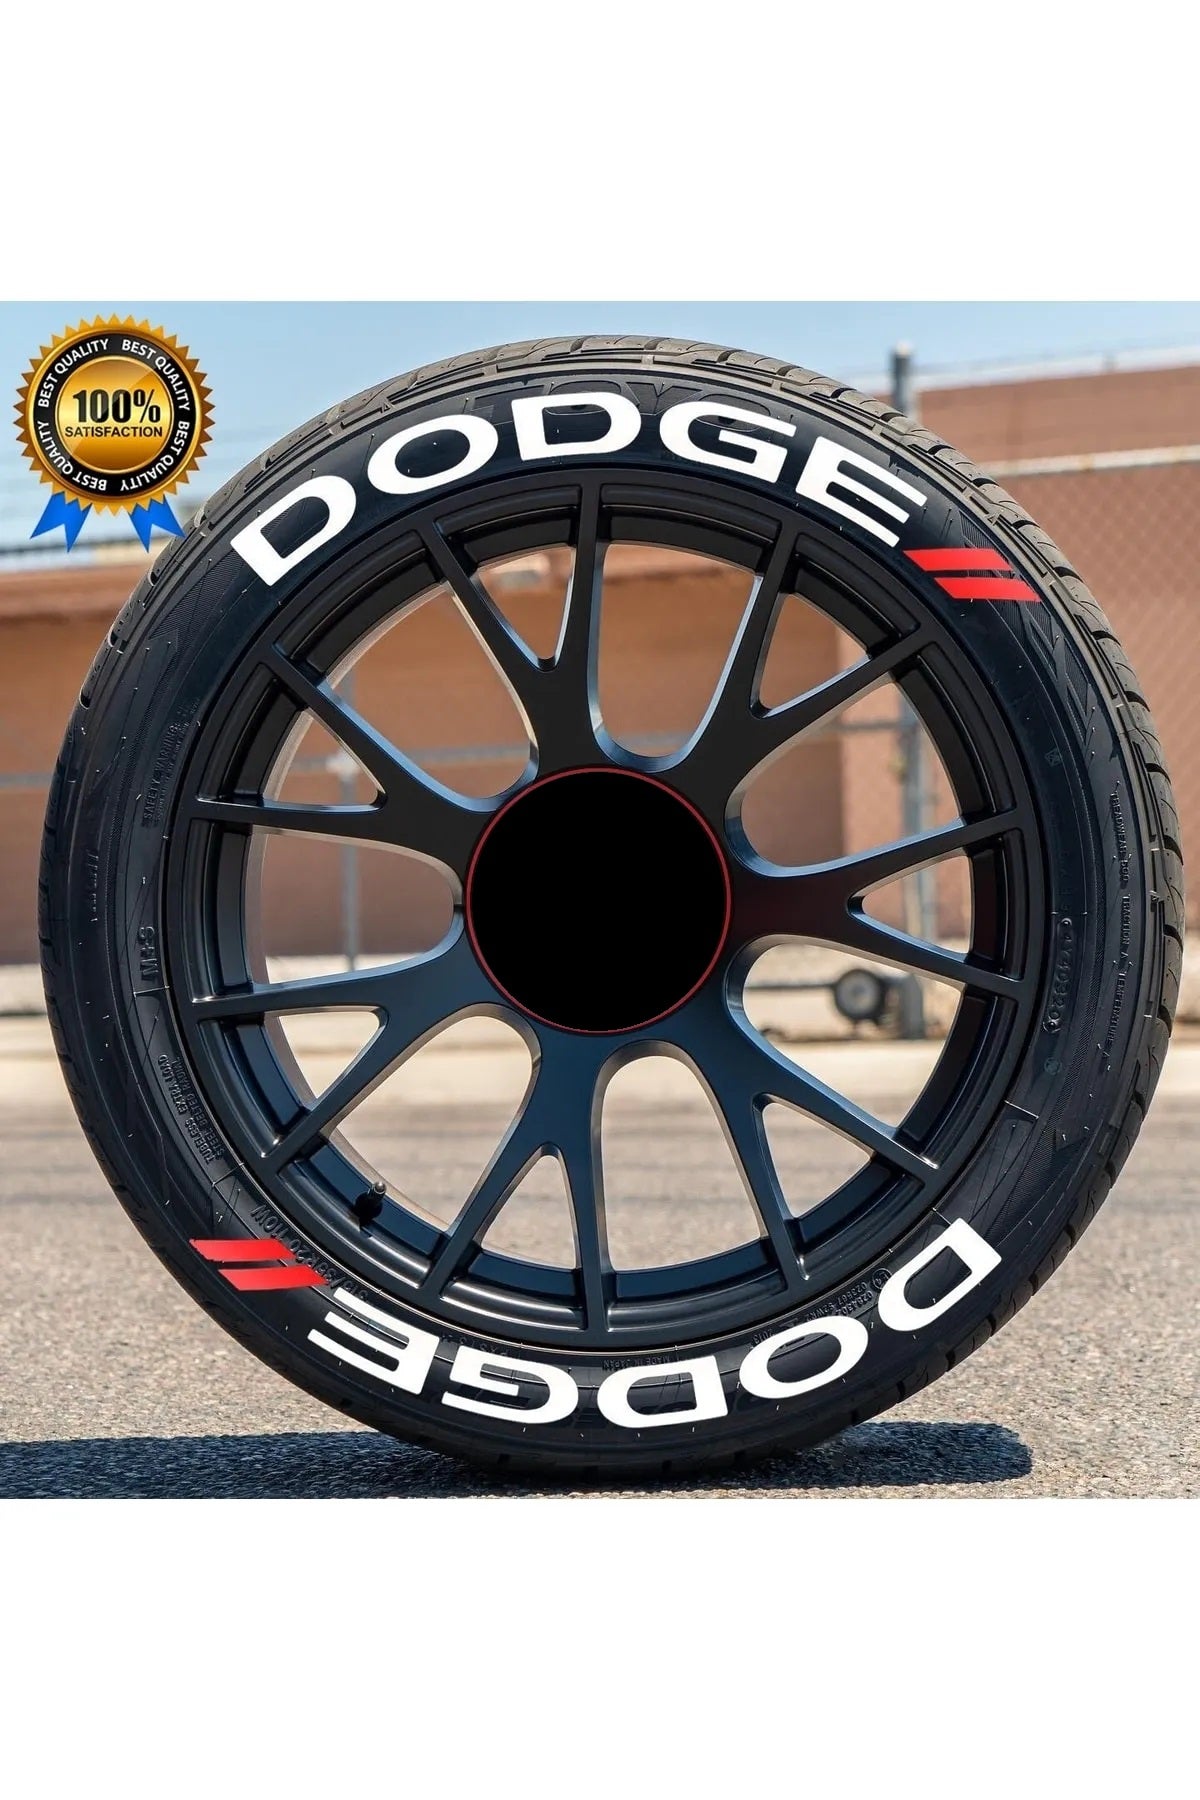 Dodge Tire Letters,Dodge TIRE STICKERS | Tire lettering Dodge Car Tire Sticker Challenger-SRT-RAM-Mopar Tire Letters